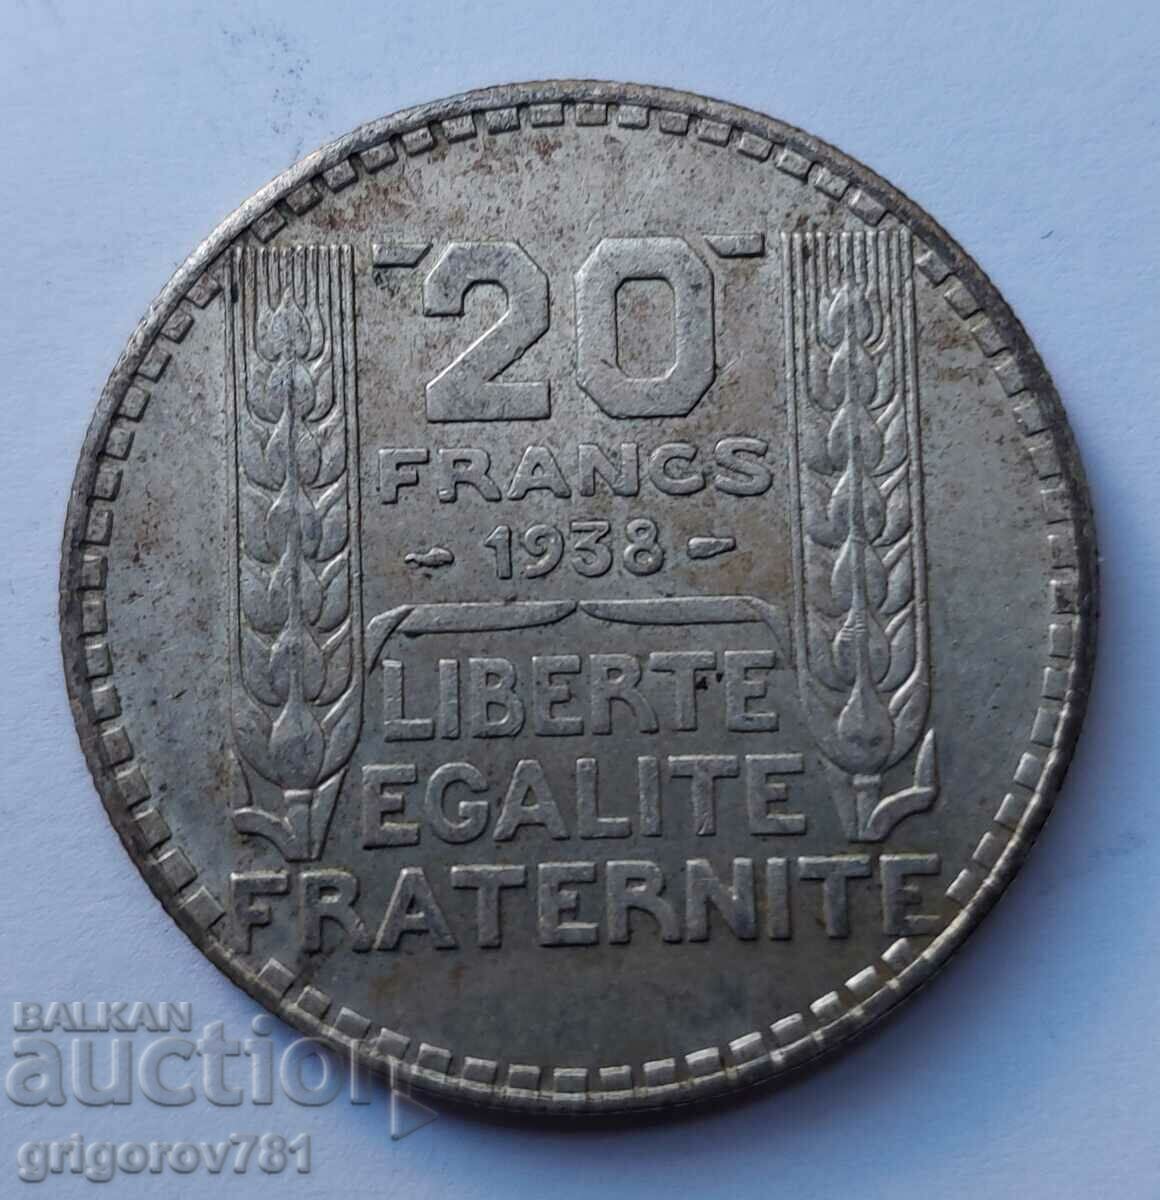 20 Φράγκα Ασήμι Γαλλία 1938 - Ασημένιο νόμισμα #44